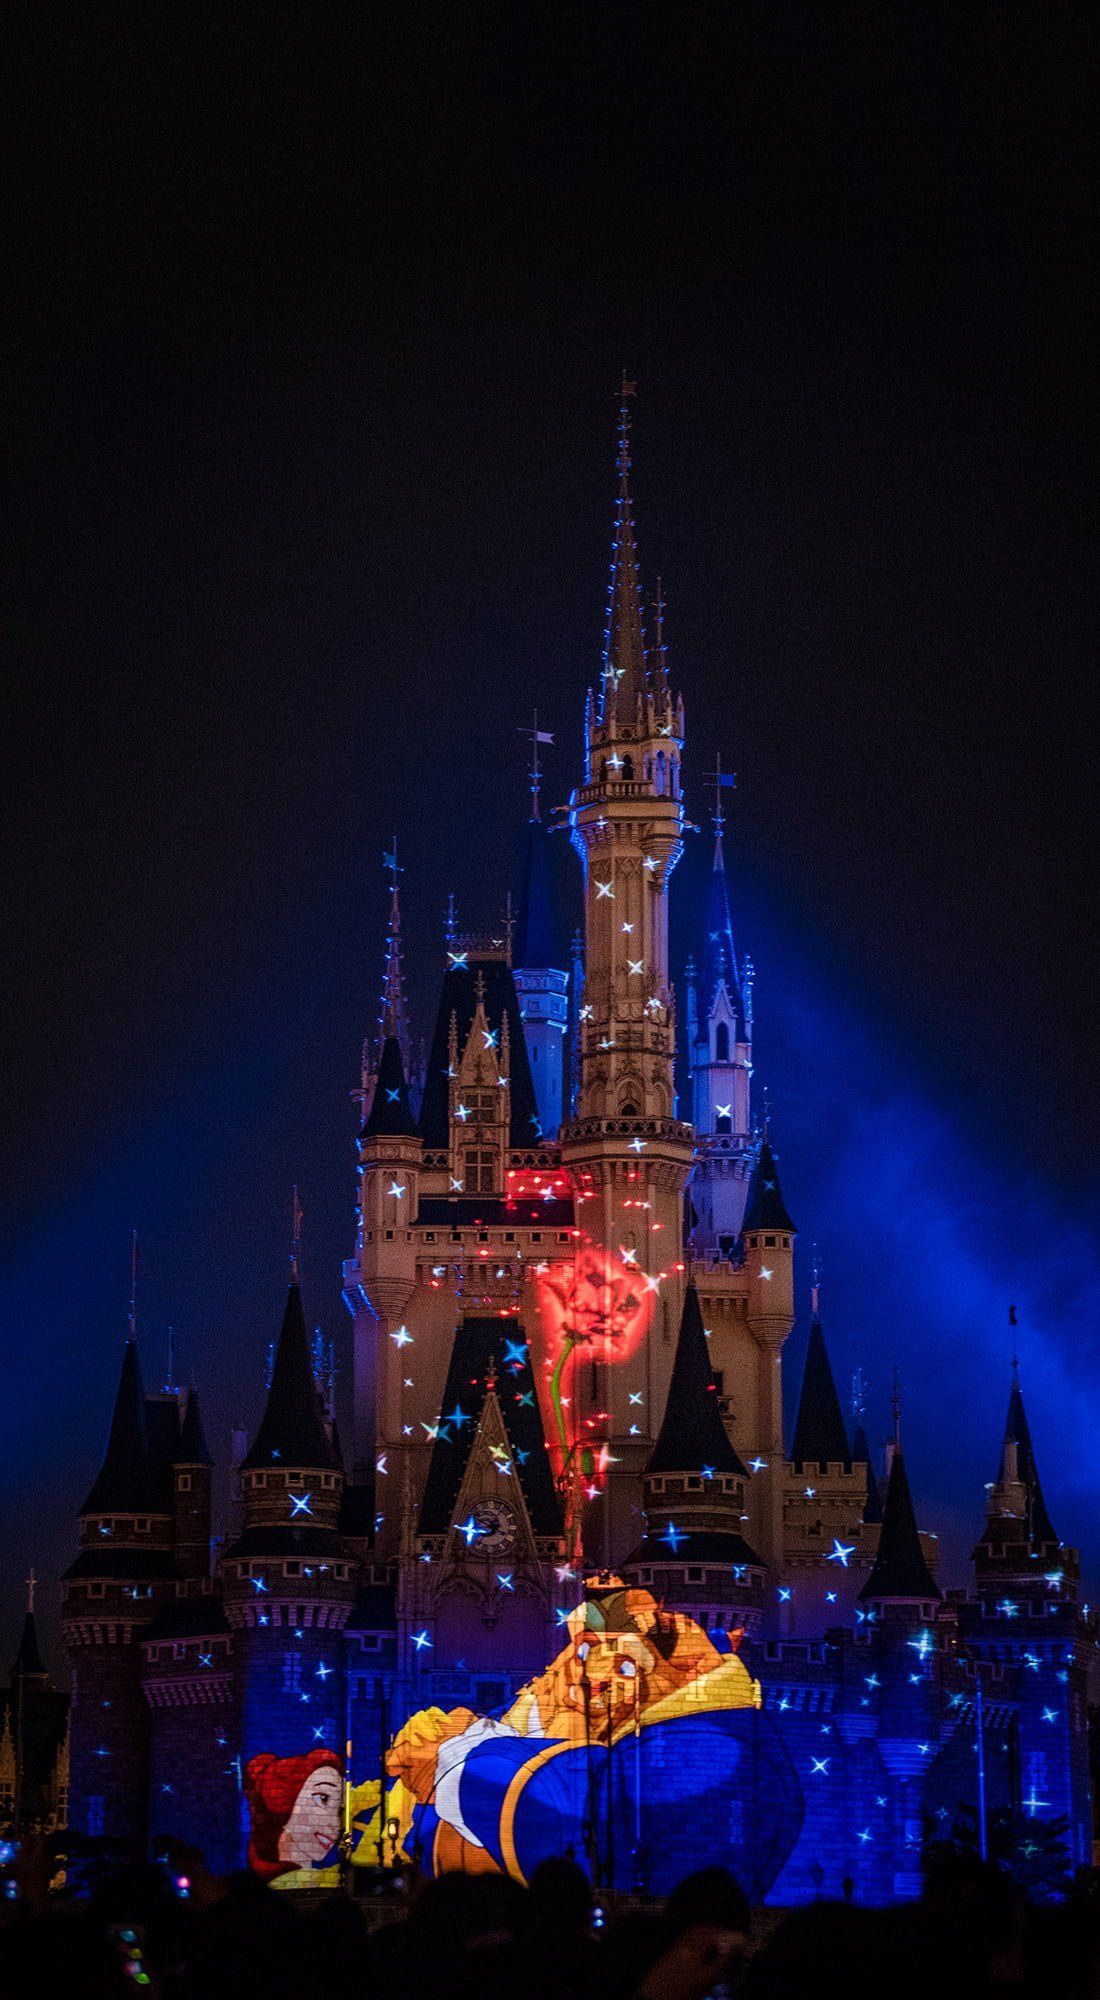 Fondos de pantalla gratuitos para iPhone de Disney - Disney Tourist Blog